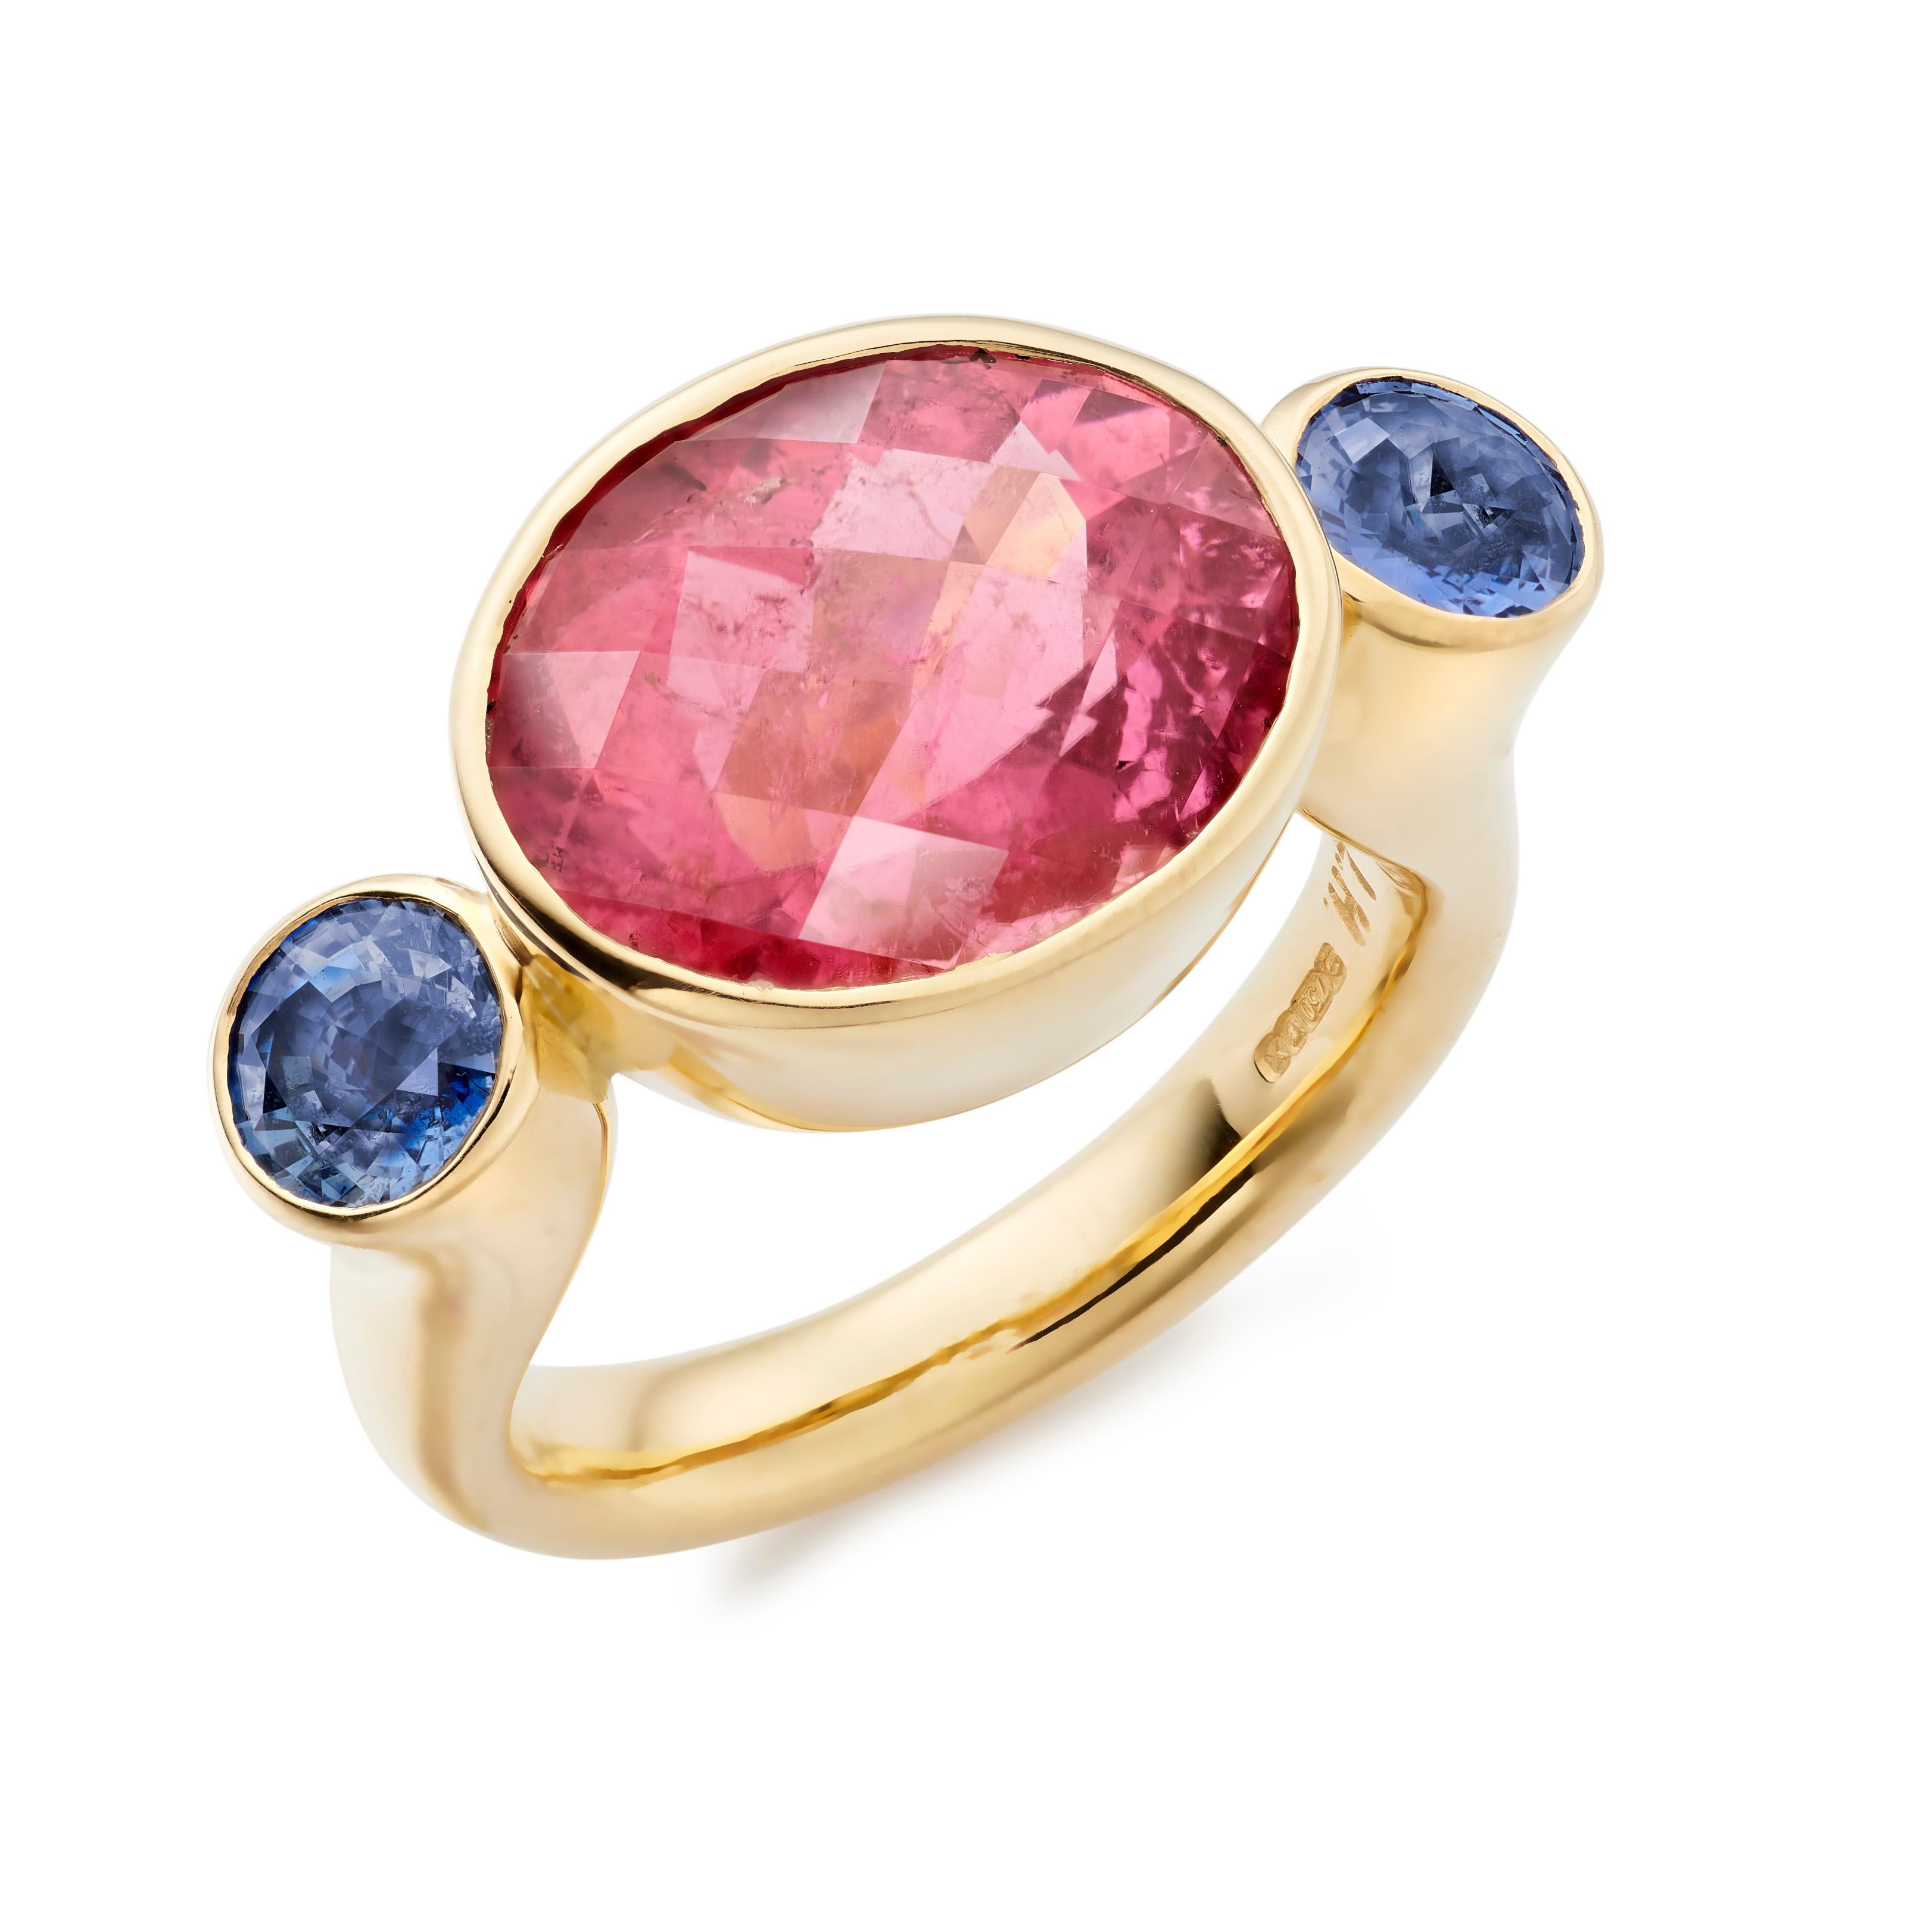 Der Bon Bon ist einer der charakteristischen Ringe von Lilly Hastedt. Das Design dieses Rings folgt der Rundung der Edelsteine. Der zentrale pinkfarbene Turmalin hat einen schachbrettartigen Facettenschliff und ist mit runden Tansaniten gepaart.